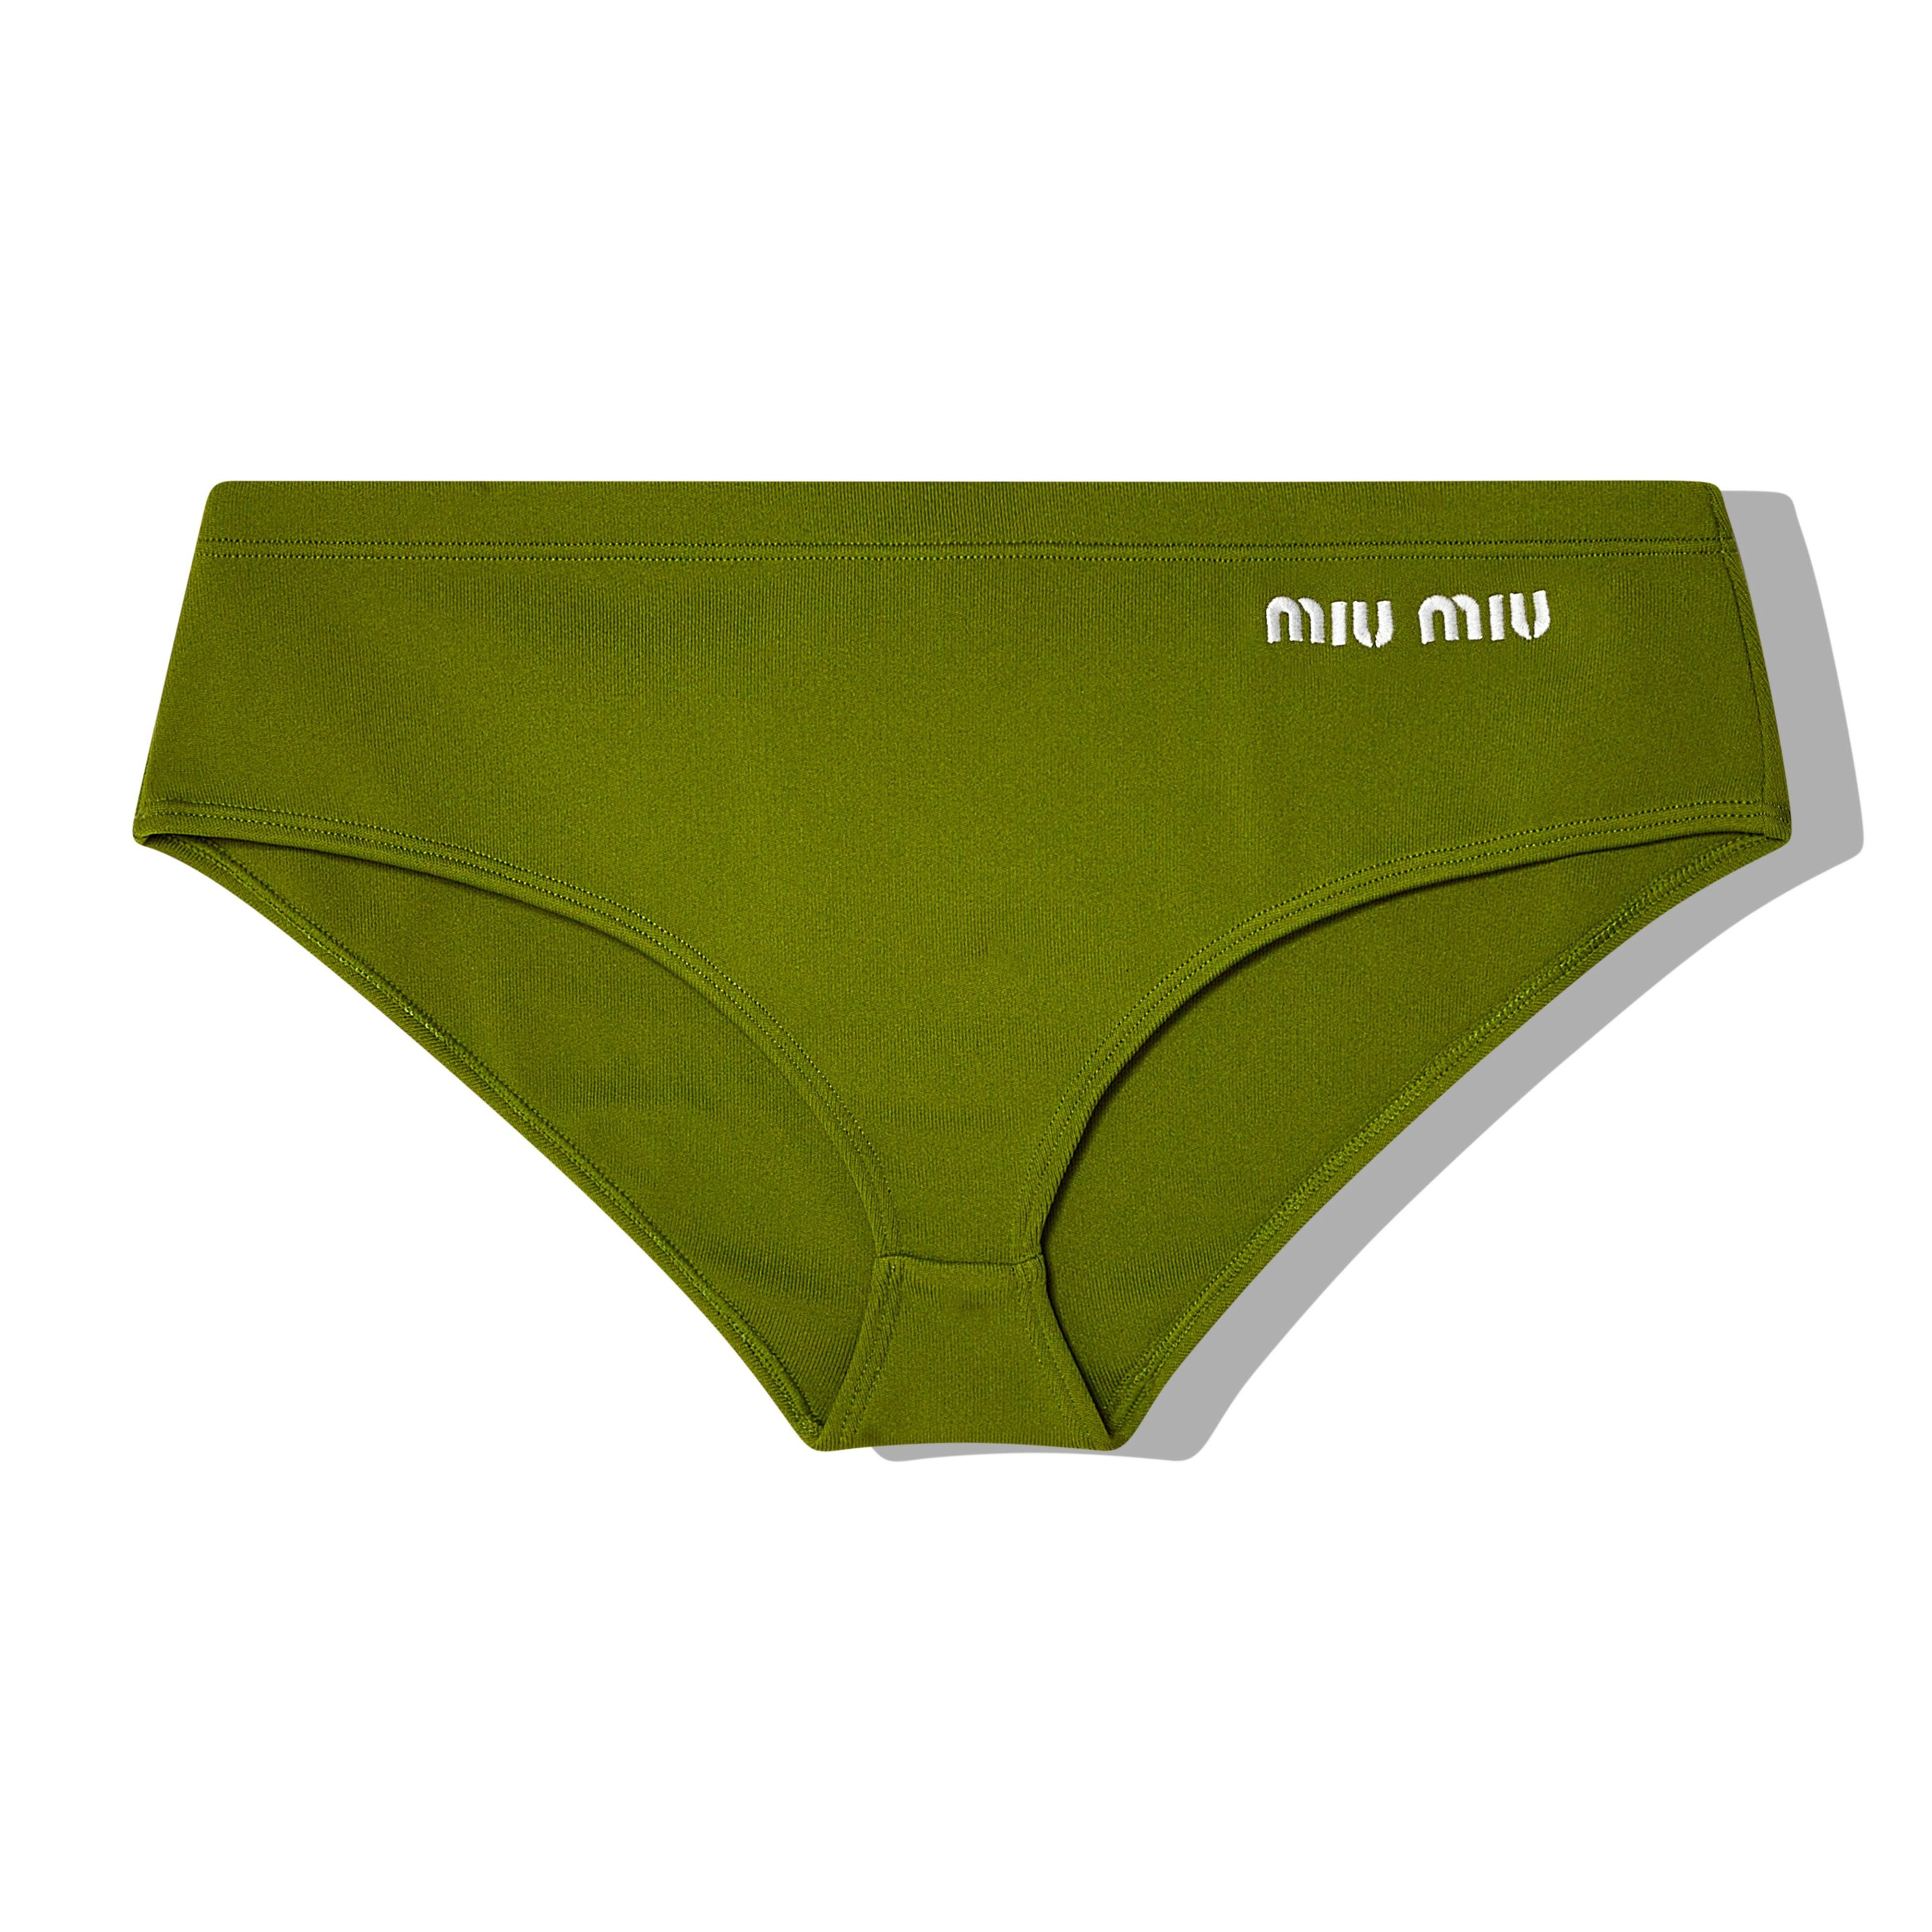 Miu Miu - Women's Swimsuit Bottoms - (Pistachio) by MIU MIU